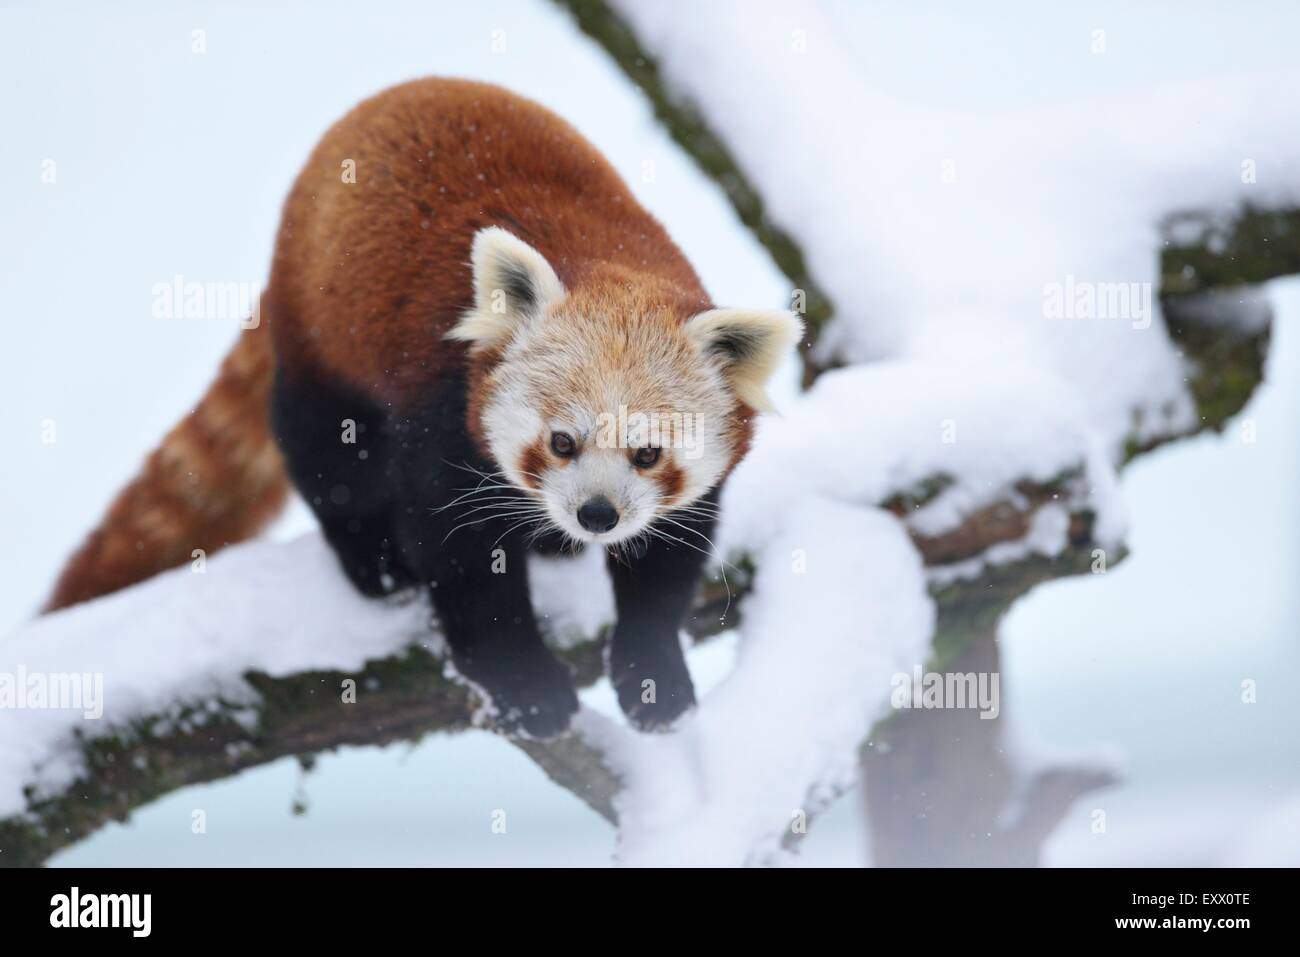 Le panda rouge en hiver dans un arbre Banque D'Images